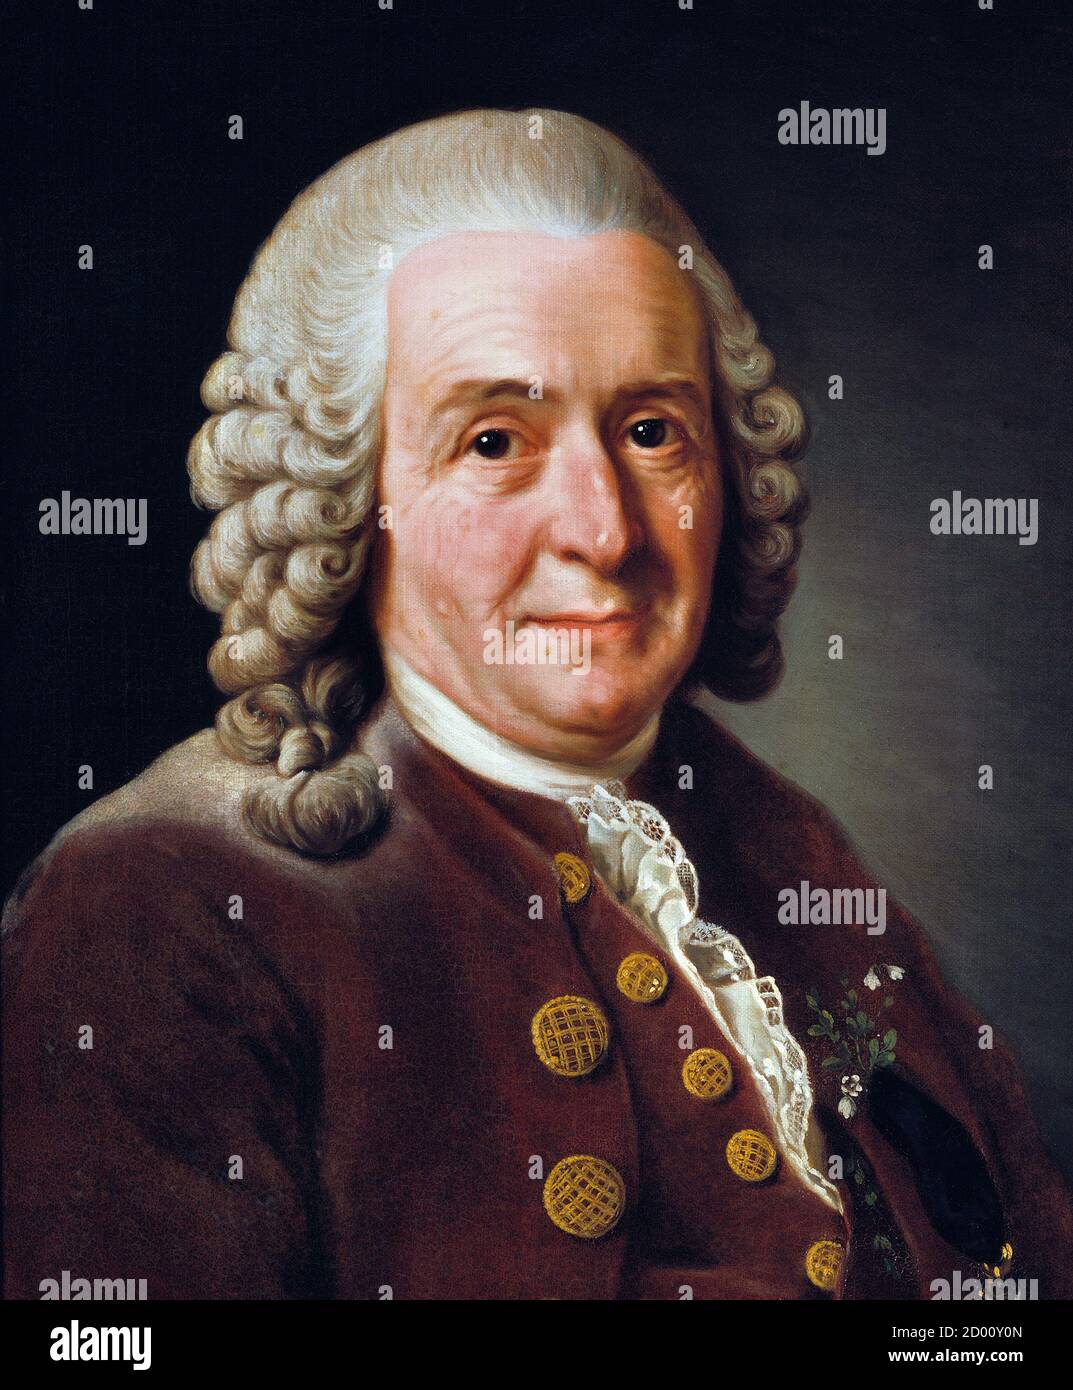 Carl Linnaeus. Porträt des schwedischen Botanikers und Zooologen Carl Linnaeus (1707-1778) von Alexander Roslin (1718–1793), Öl auf Leinwand, 1775. Nationalmuseum (Stockholm) Stockfoto